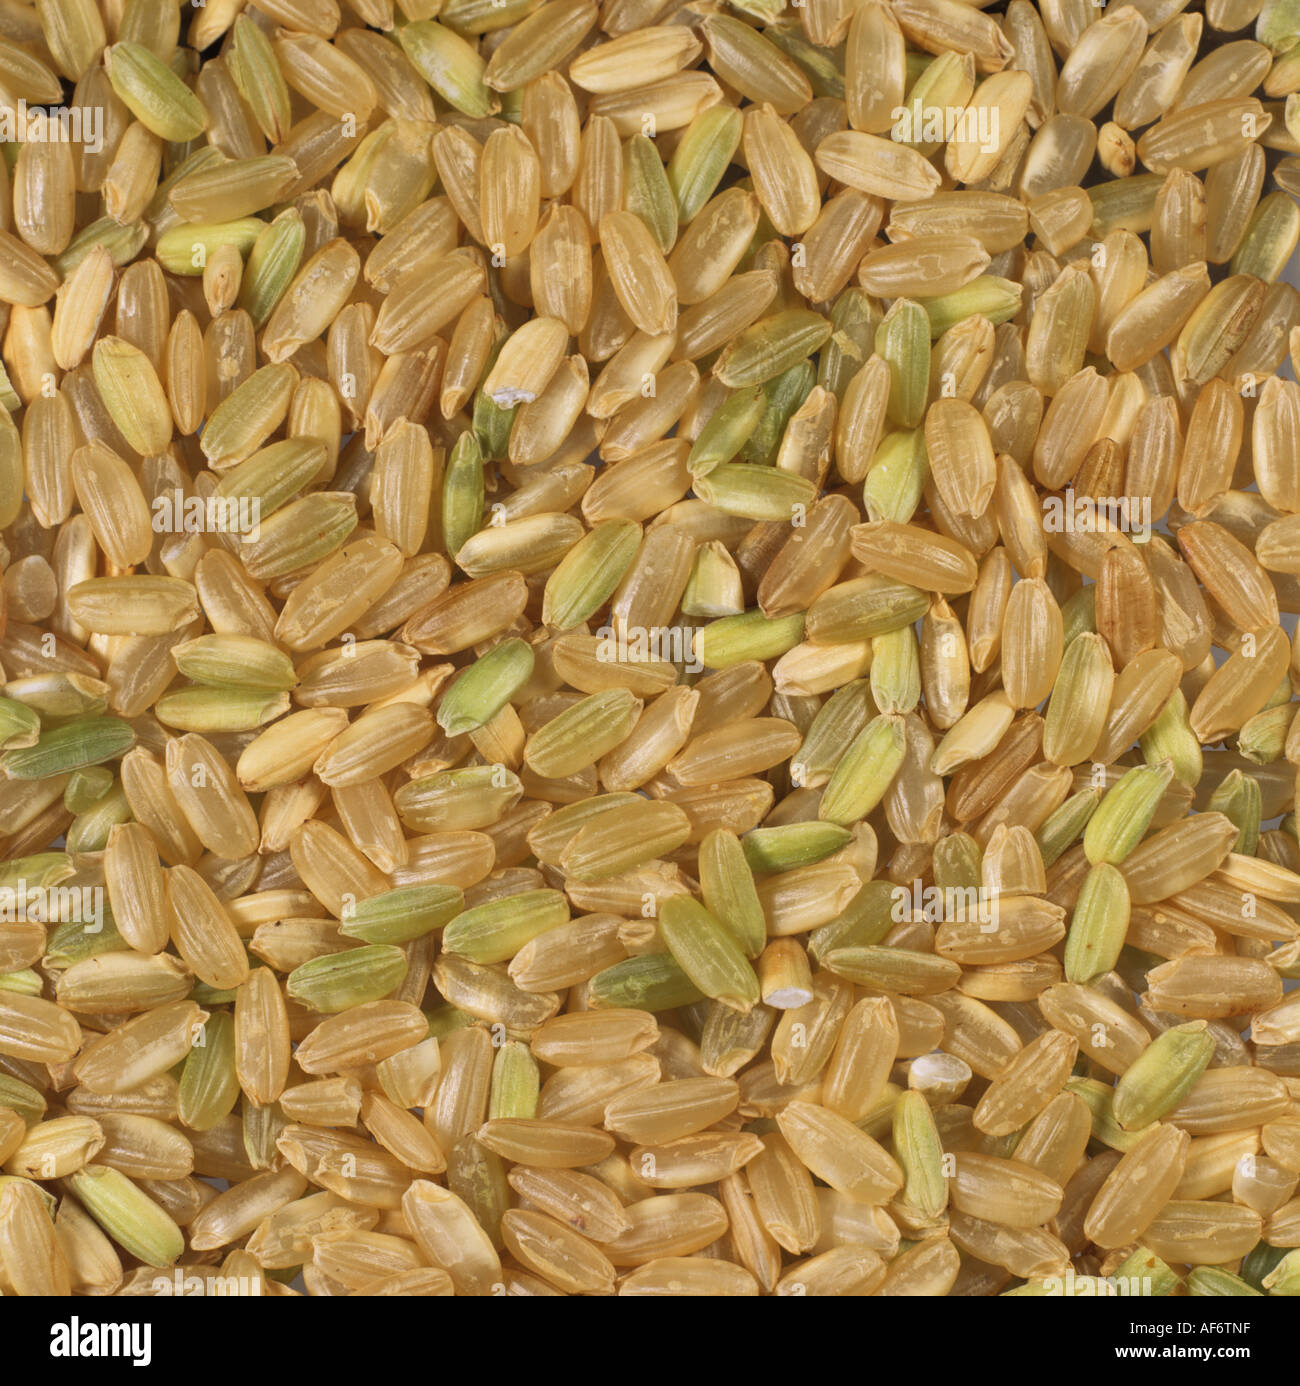 Produzione biologica dei chicchi di riso alcuni con bucce acquistato da health food shop Foto Stock